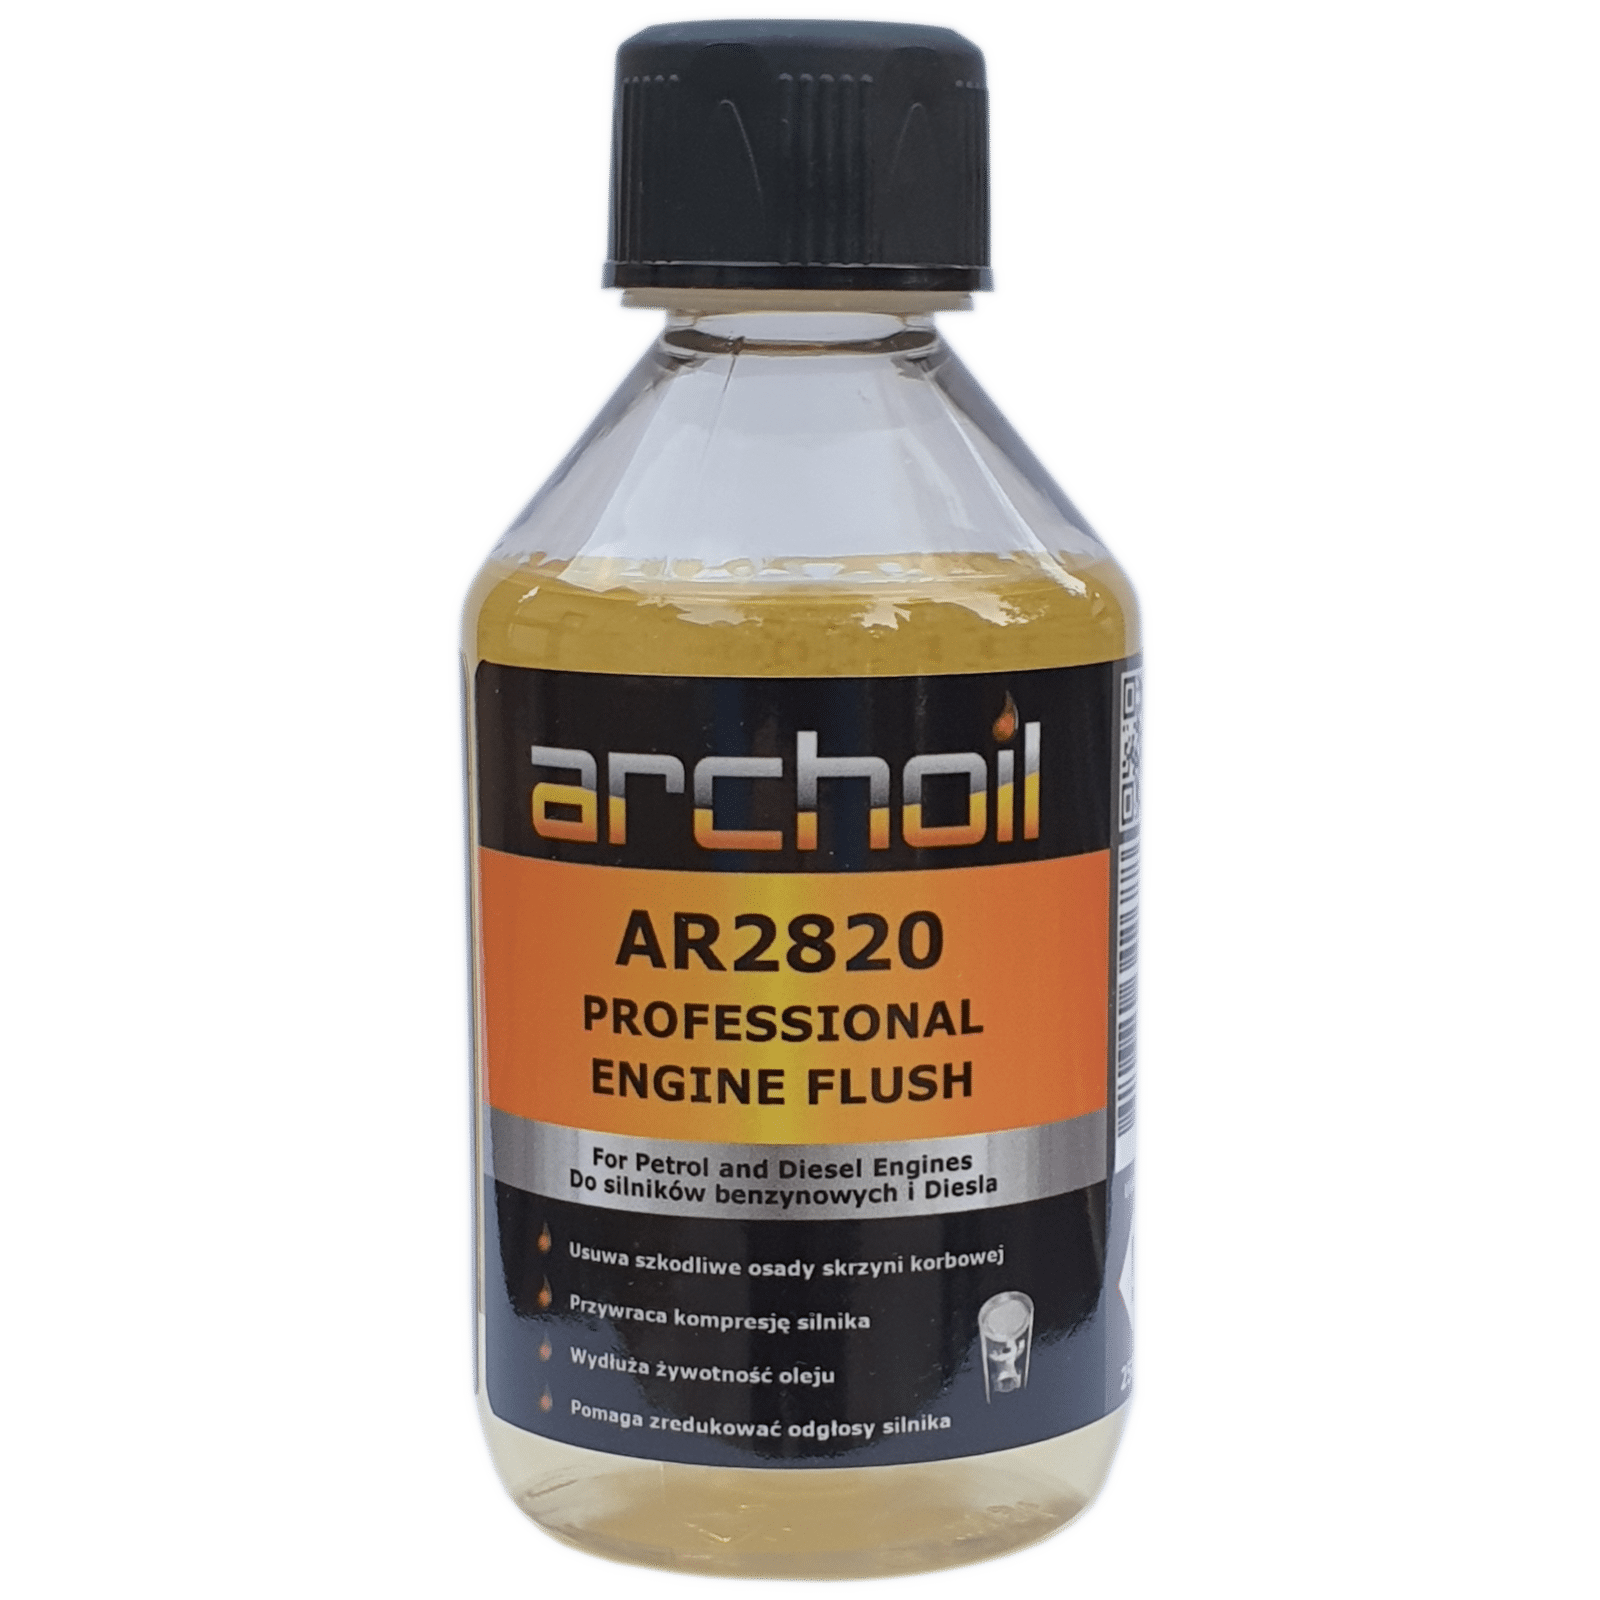 Archoil AR2820 250ml